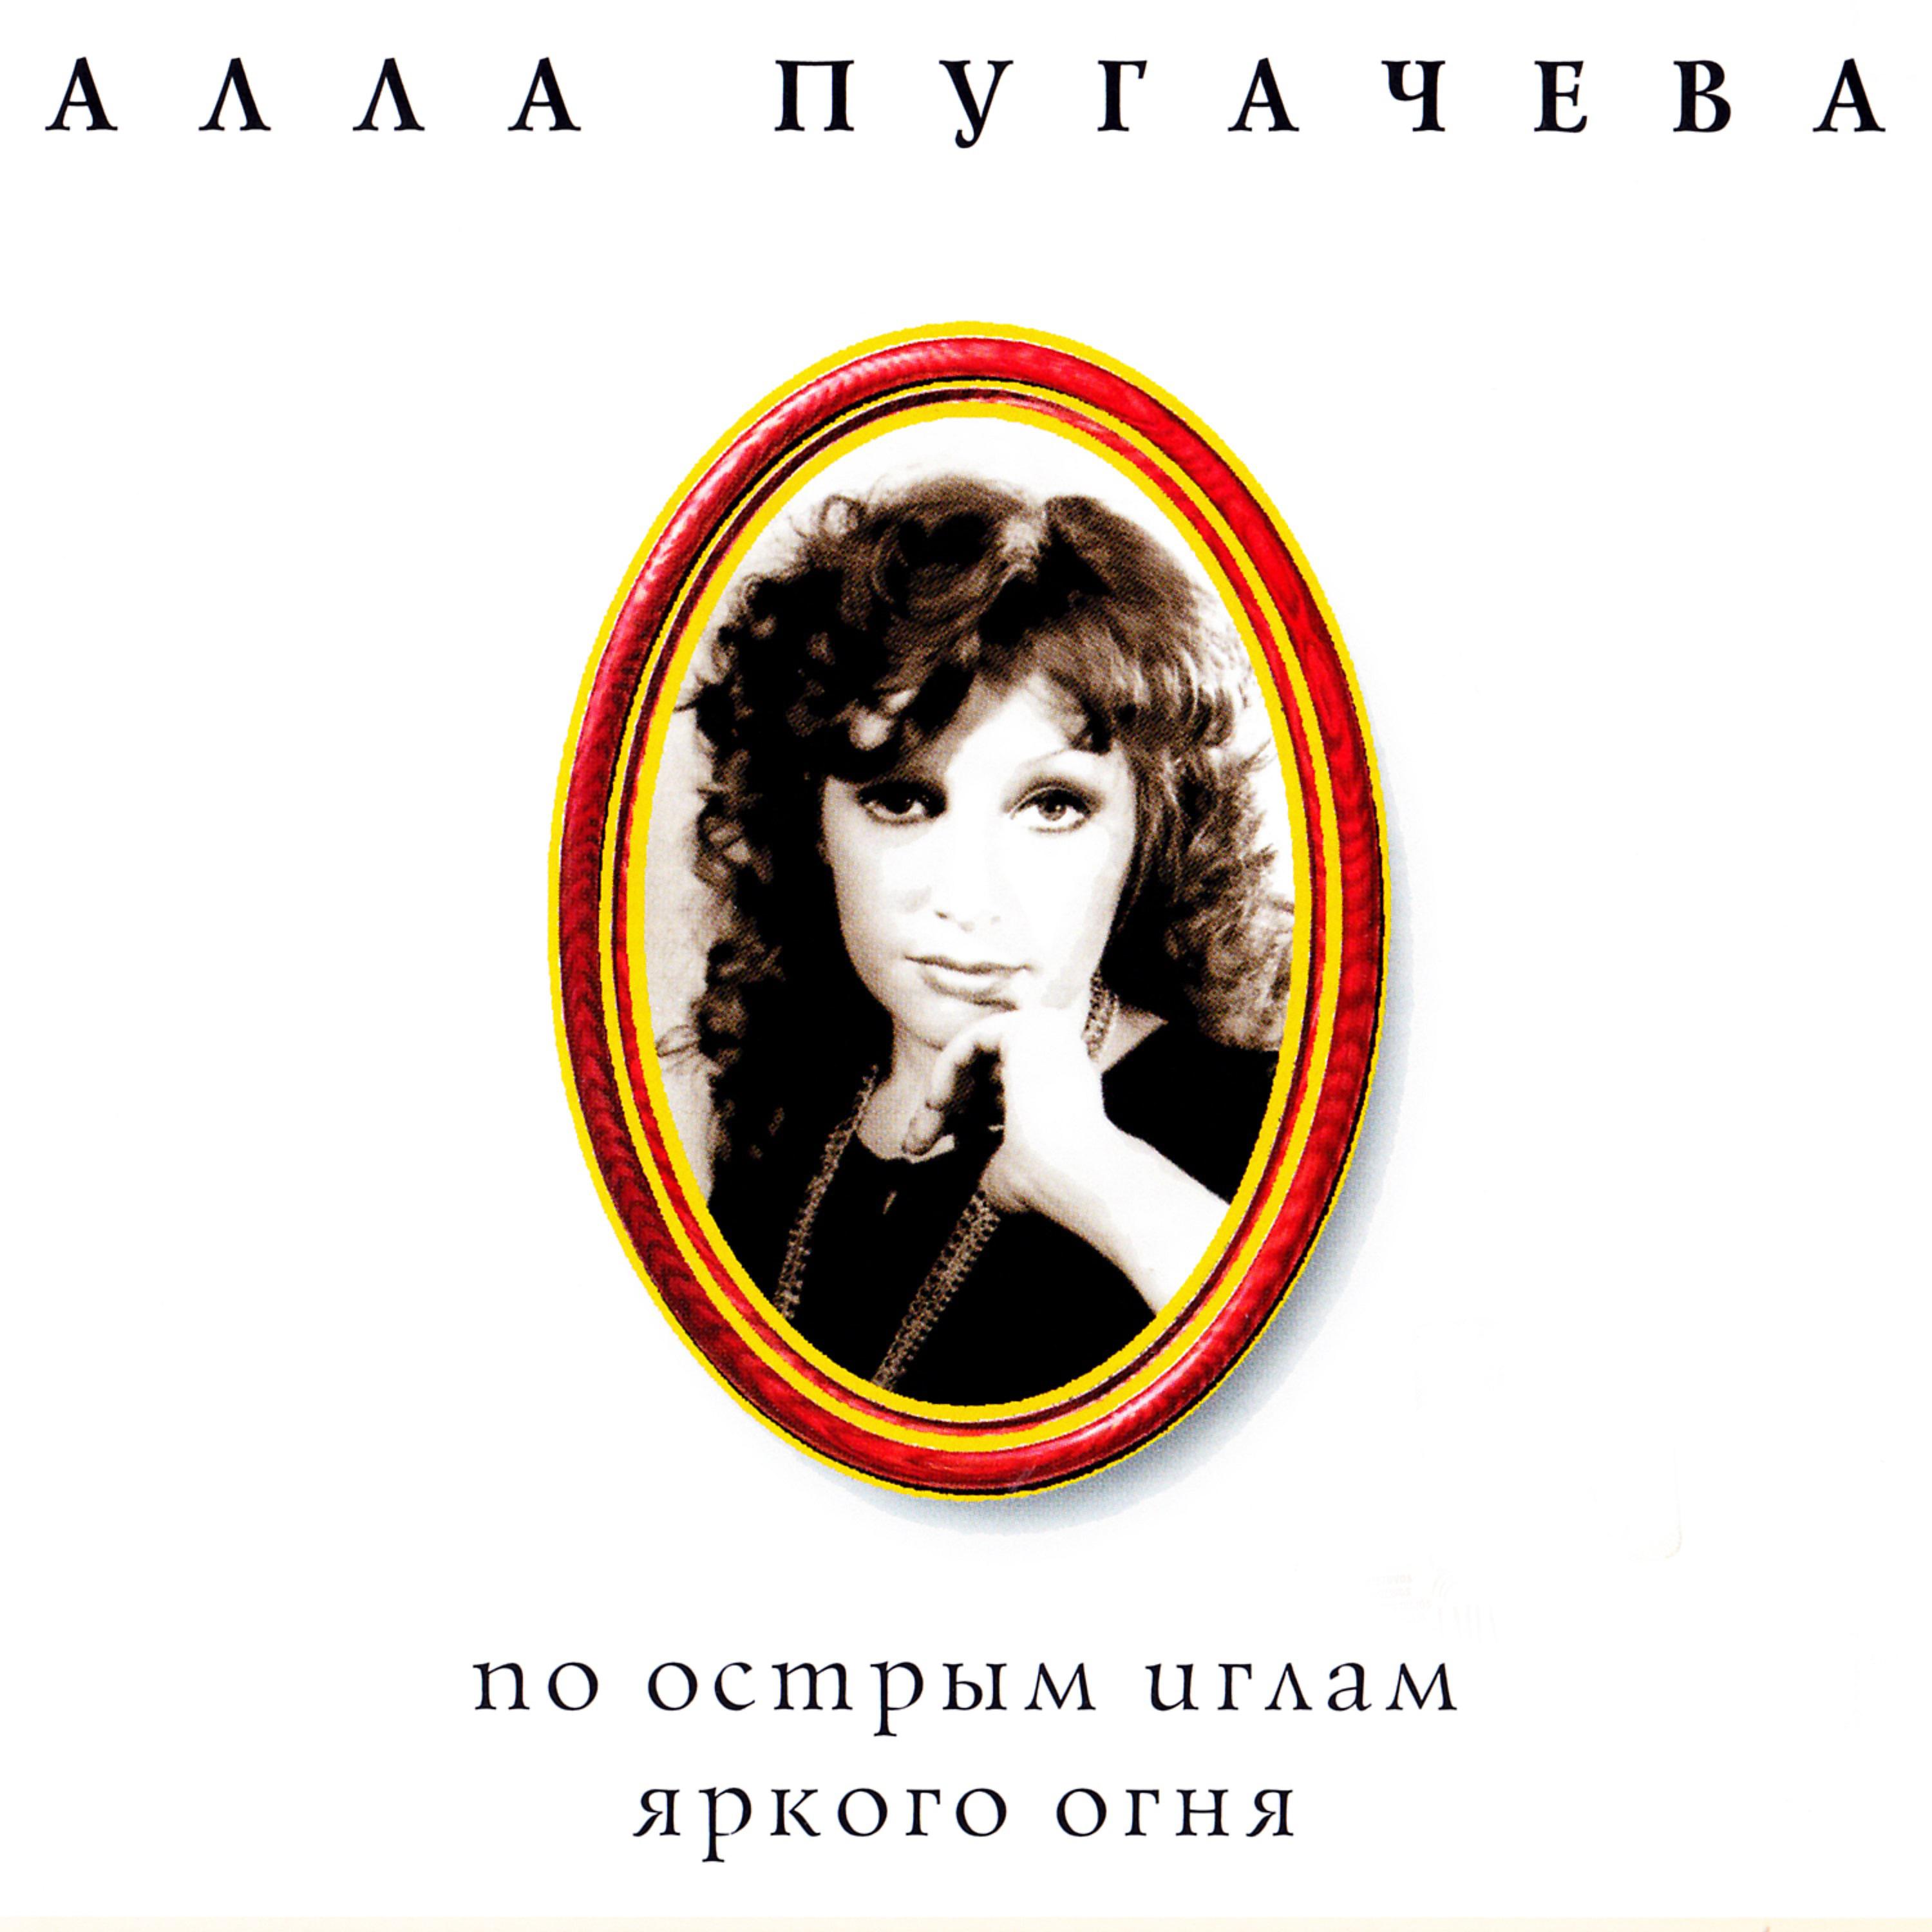 Пугачева синглы. Пугачева Сопот 1975.